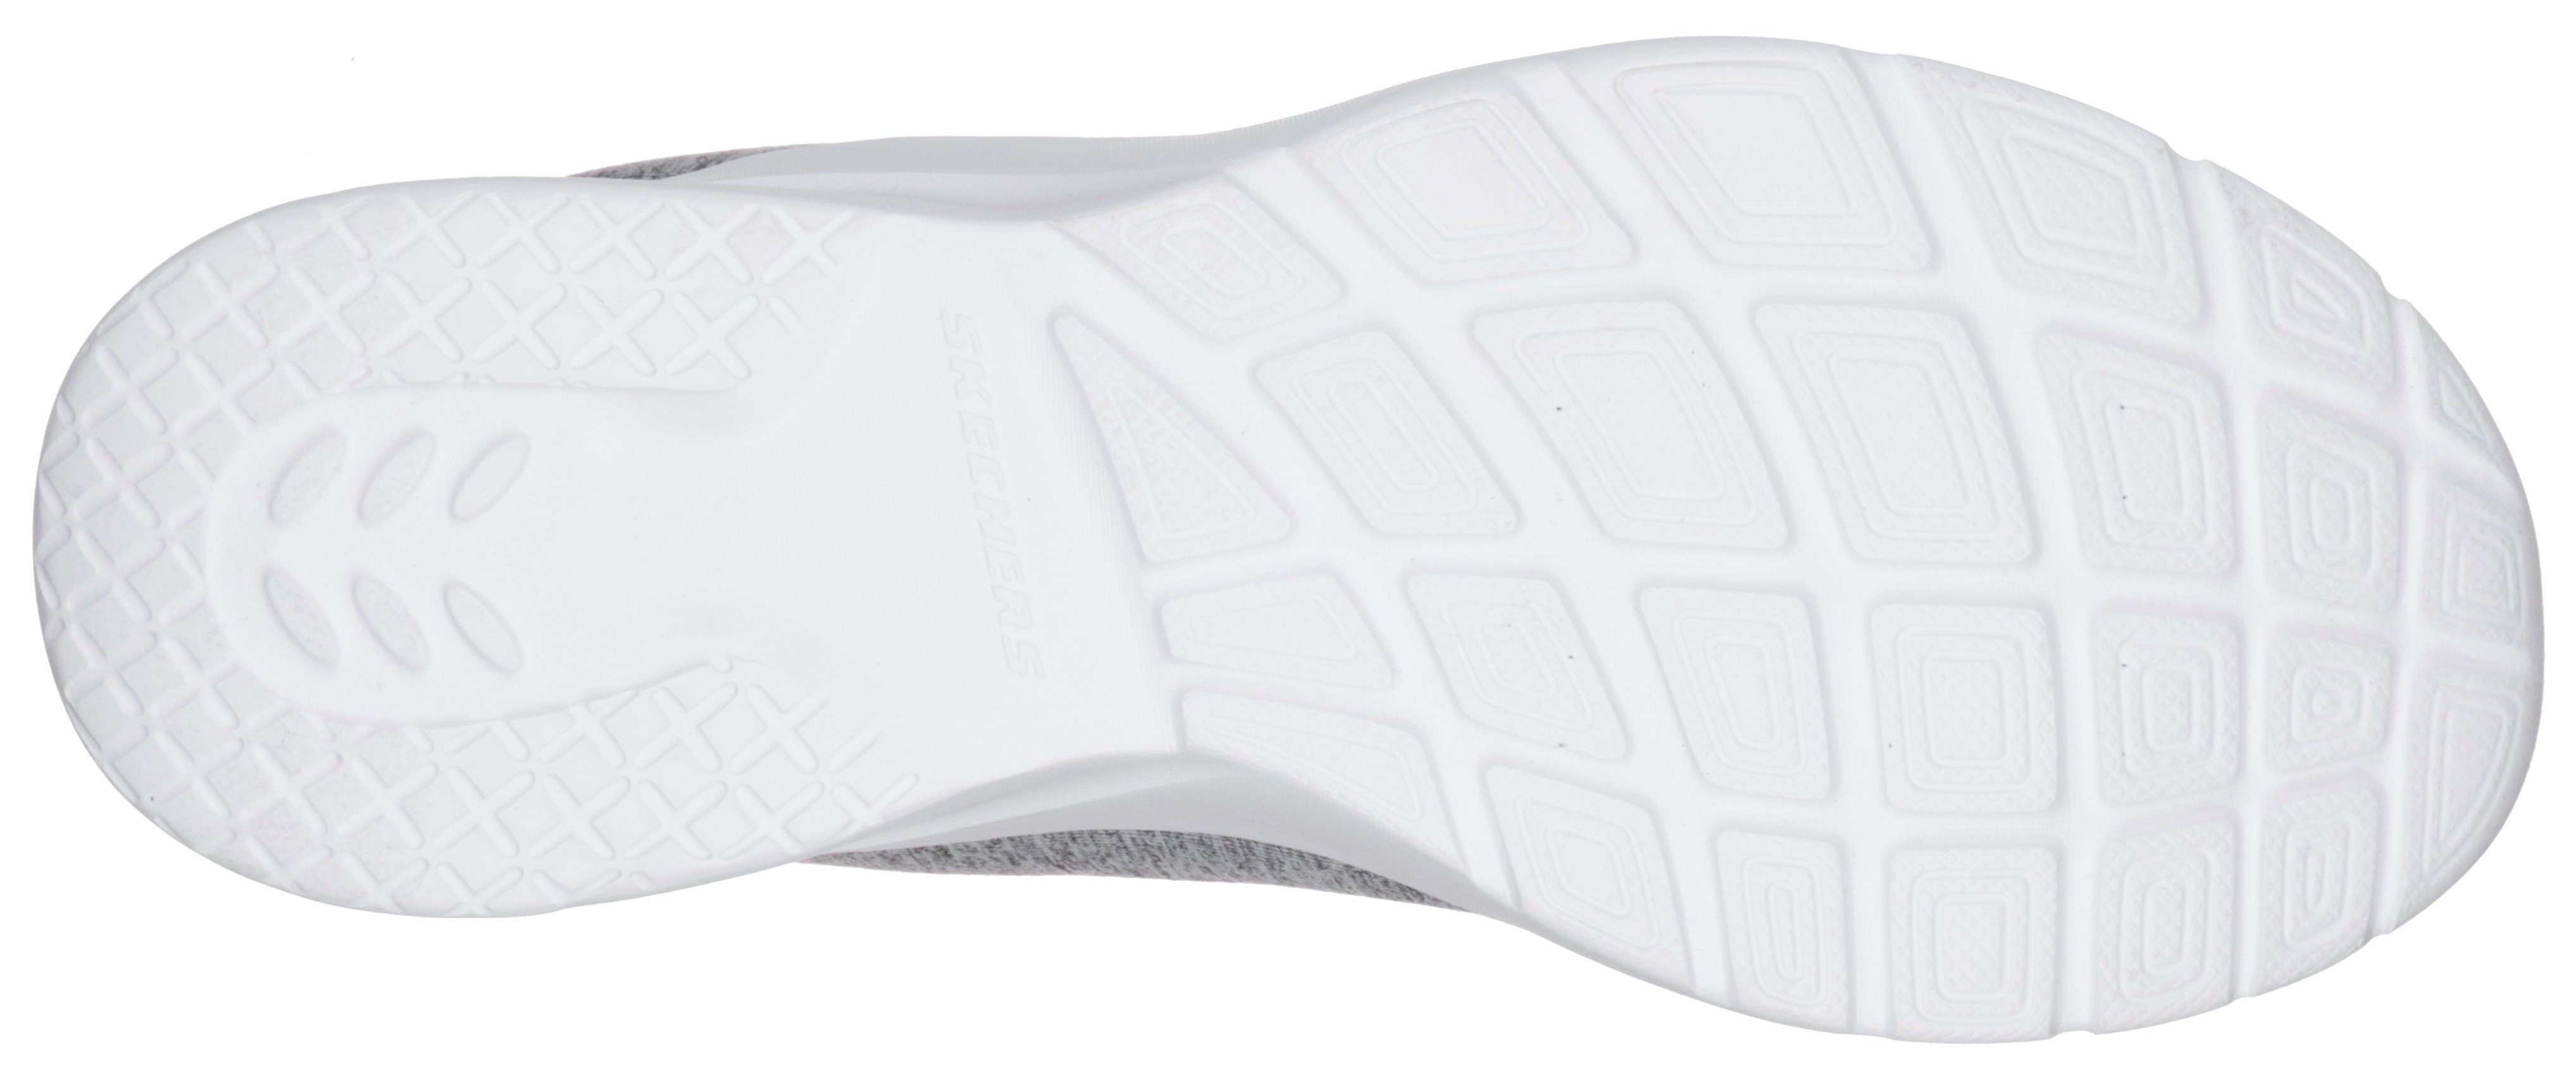 A FLASH DYNAMIGHT für Sneaker geeignet Slip-On grau-mint 2.0-IN Maschinenwäsche Skechers